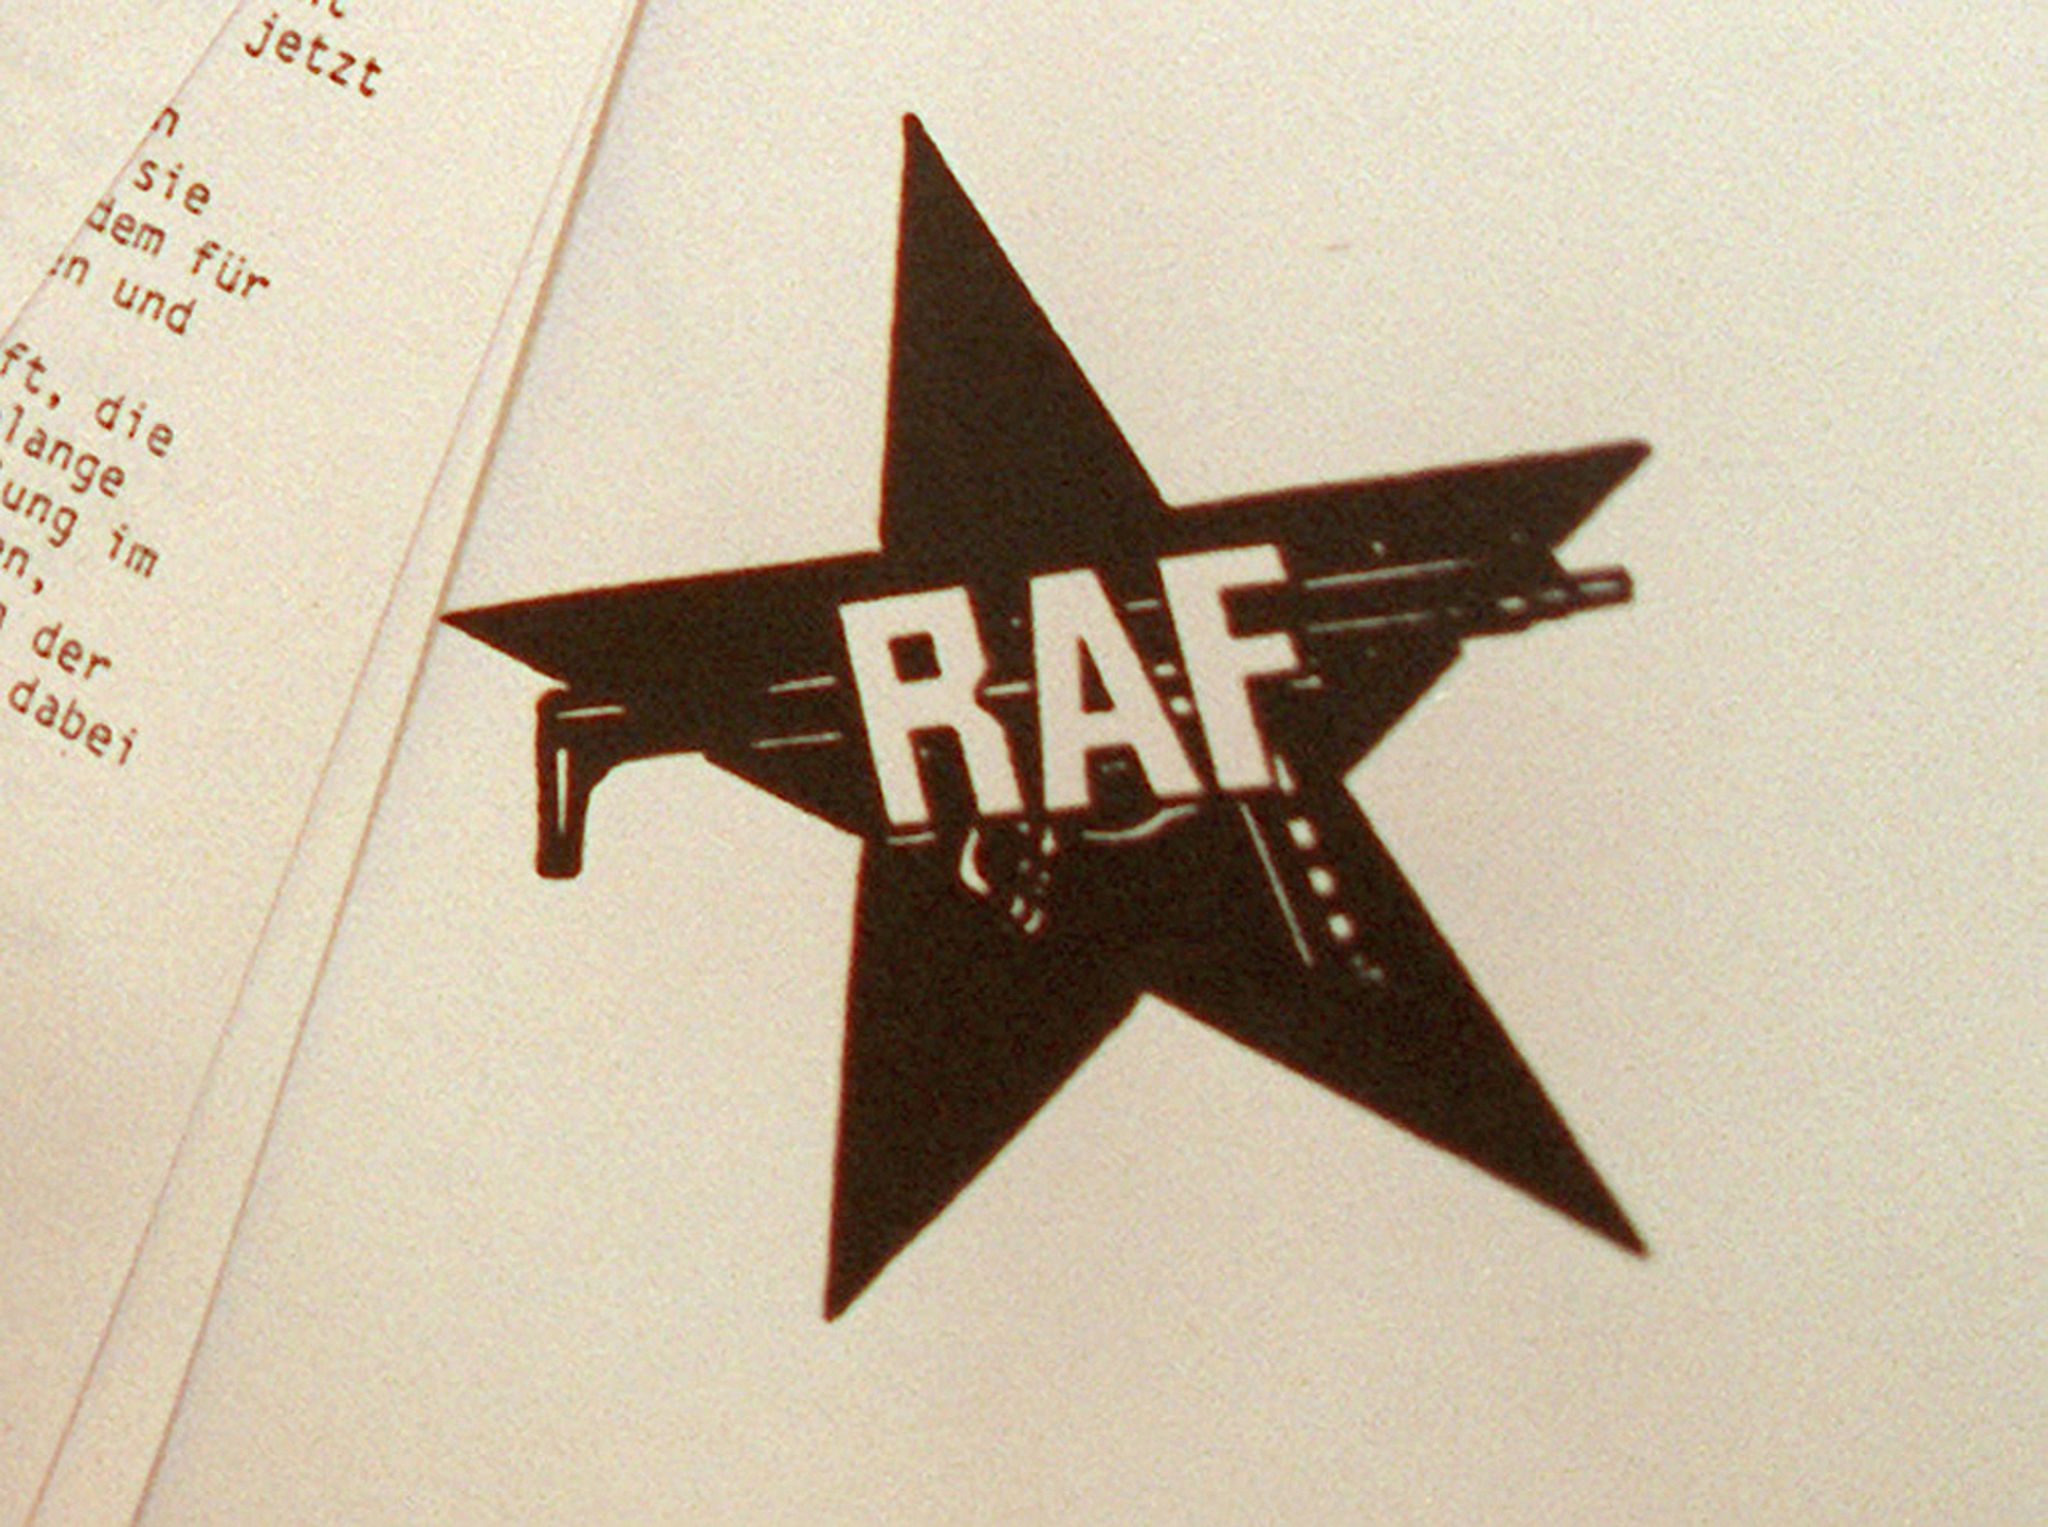 Mit ihrem bewaffneten Kampf und dem Konzept einer angeblichen Stadtguerilla verglich sich die RAF mit weltweiten Befreiungsbewegungen.